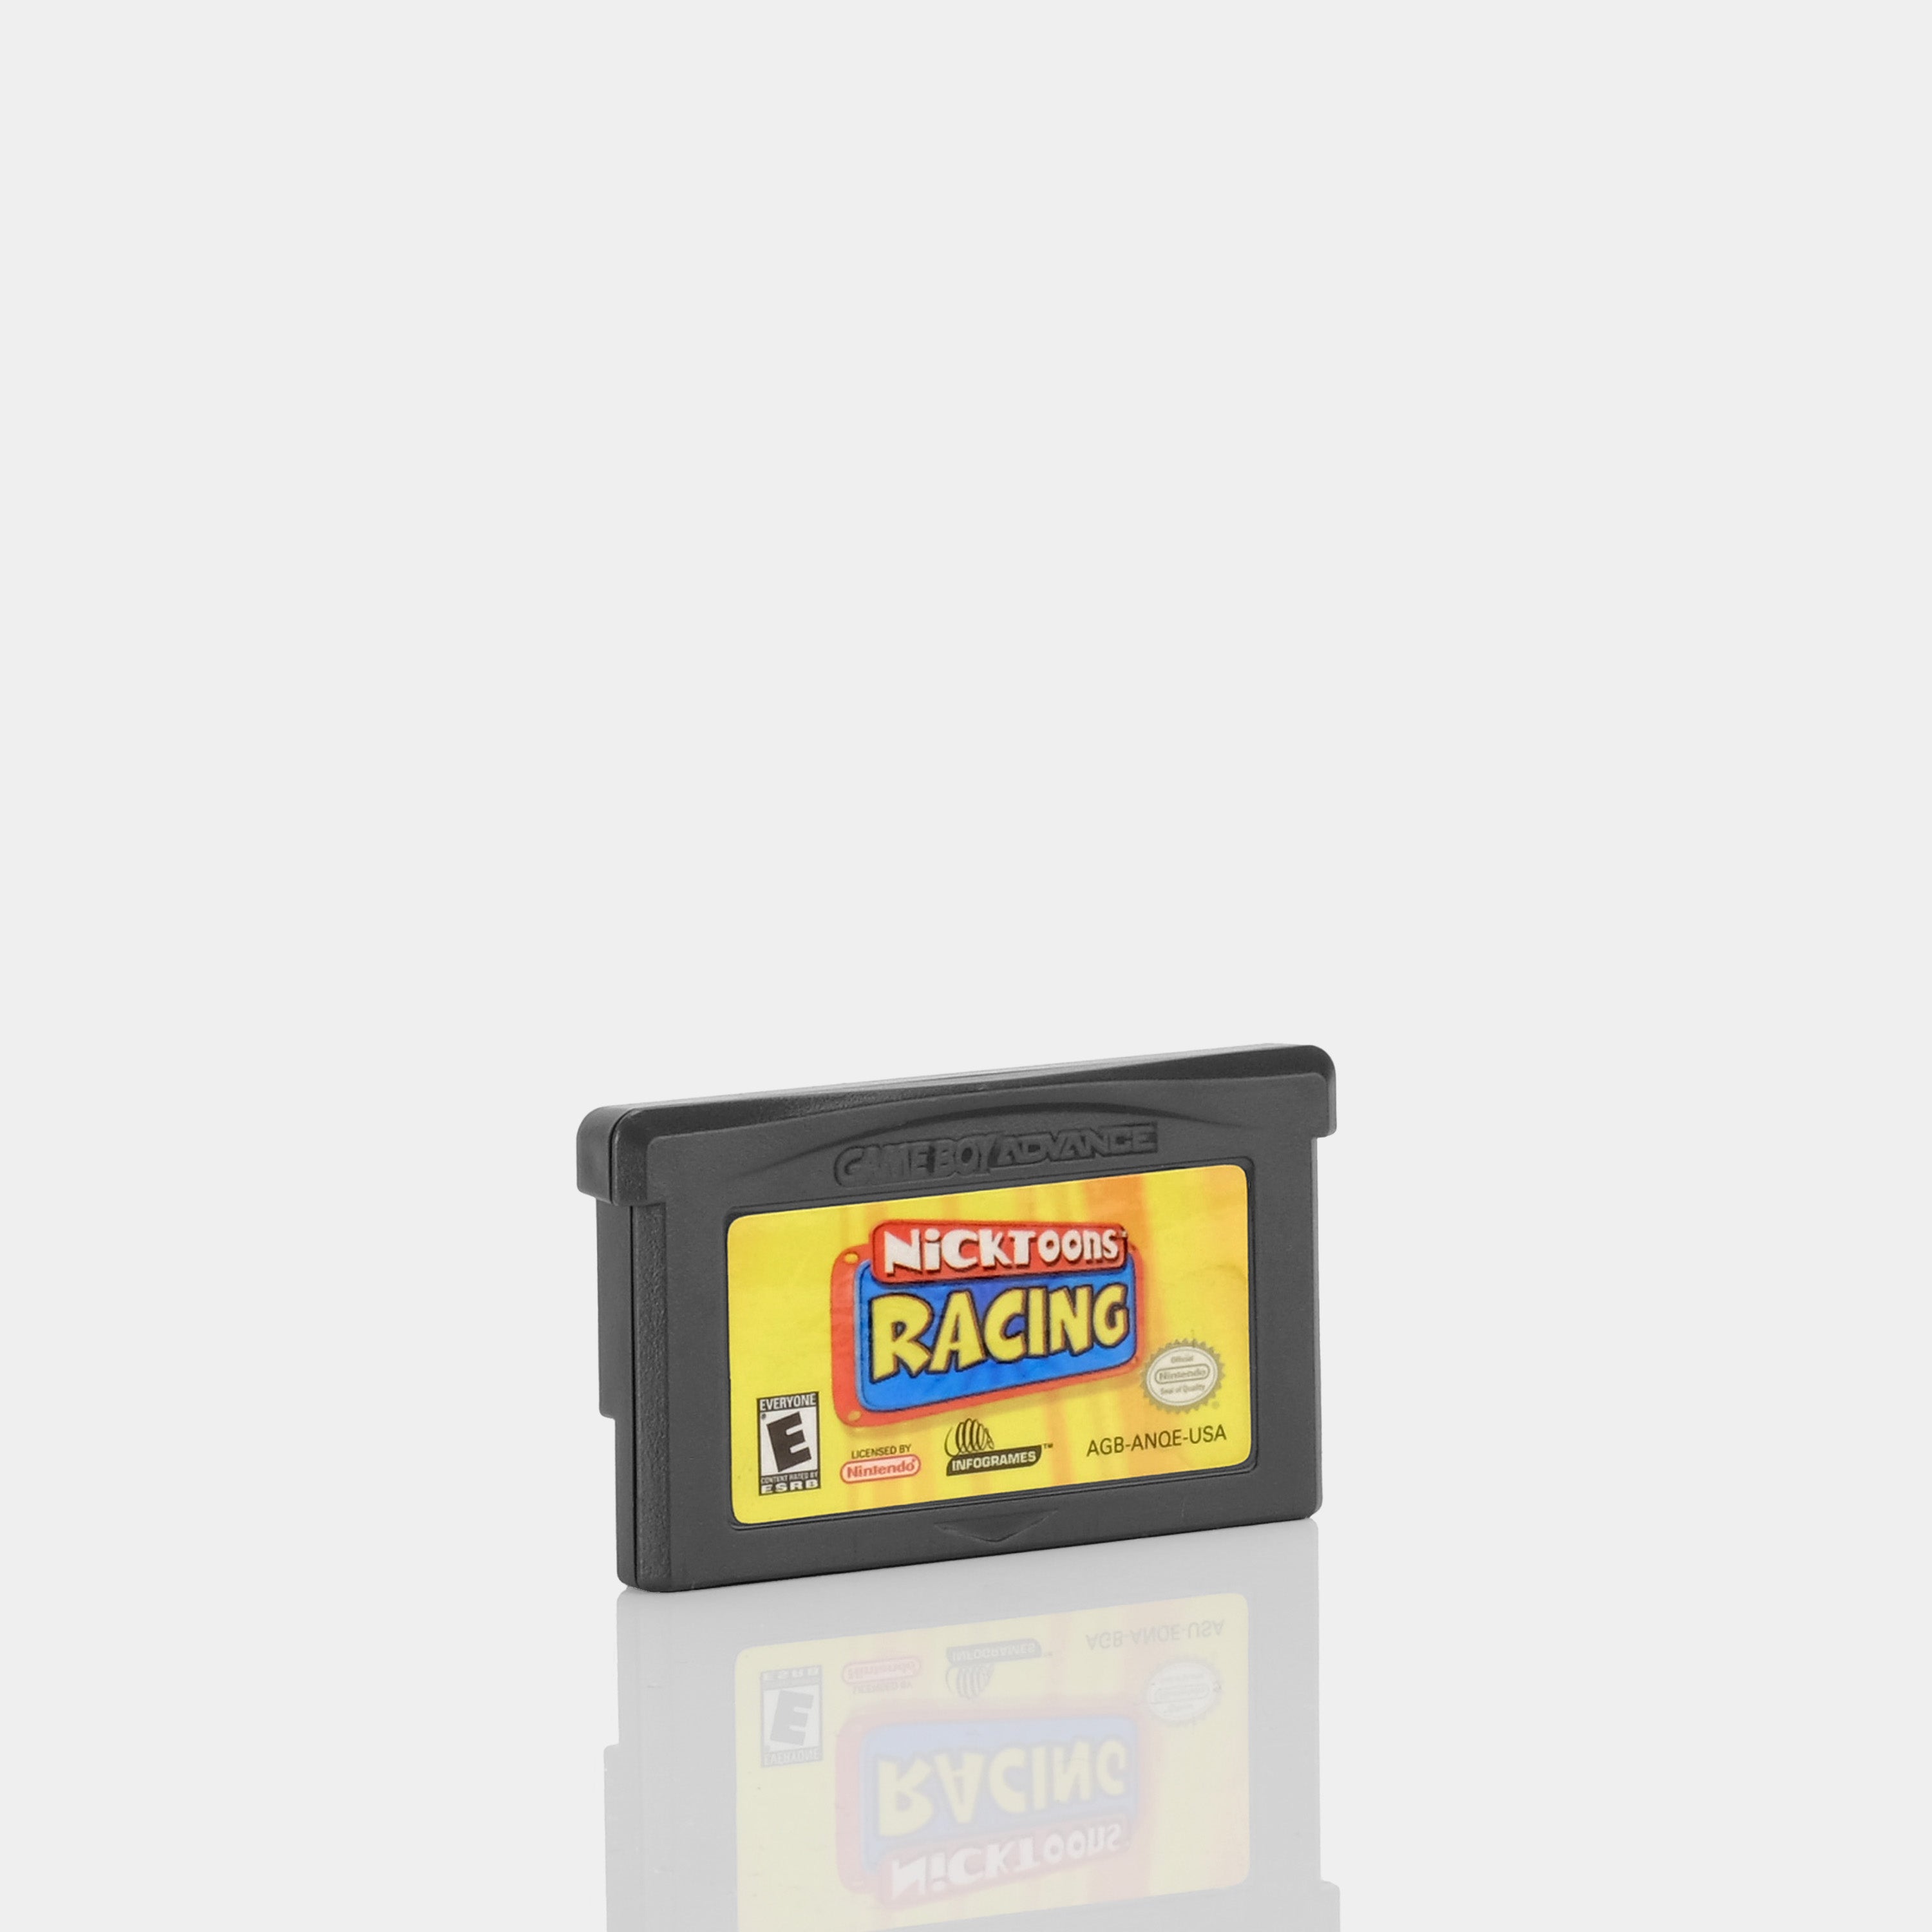 Nicktoons Racing Game Boy Advance Game